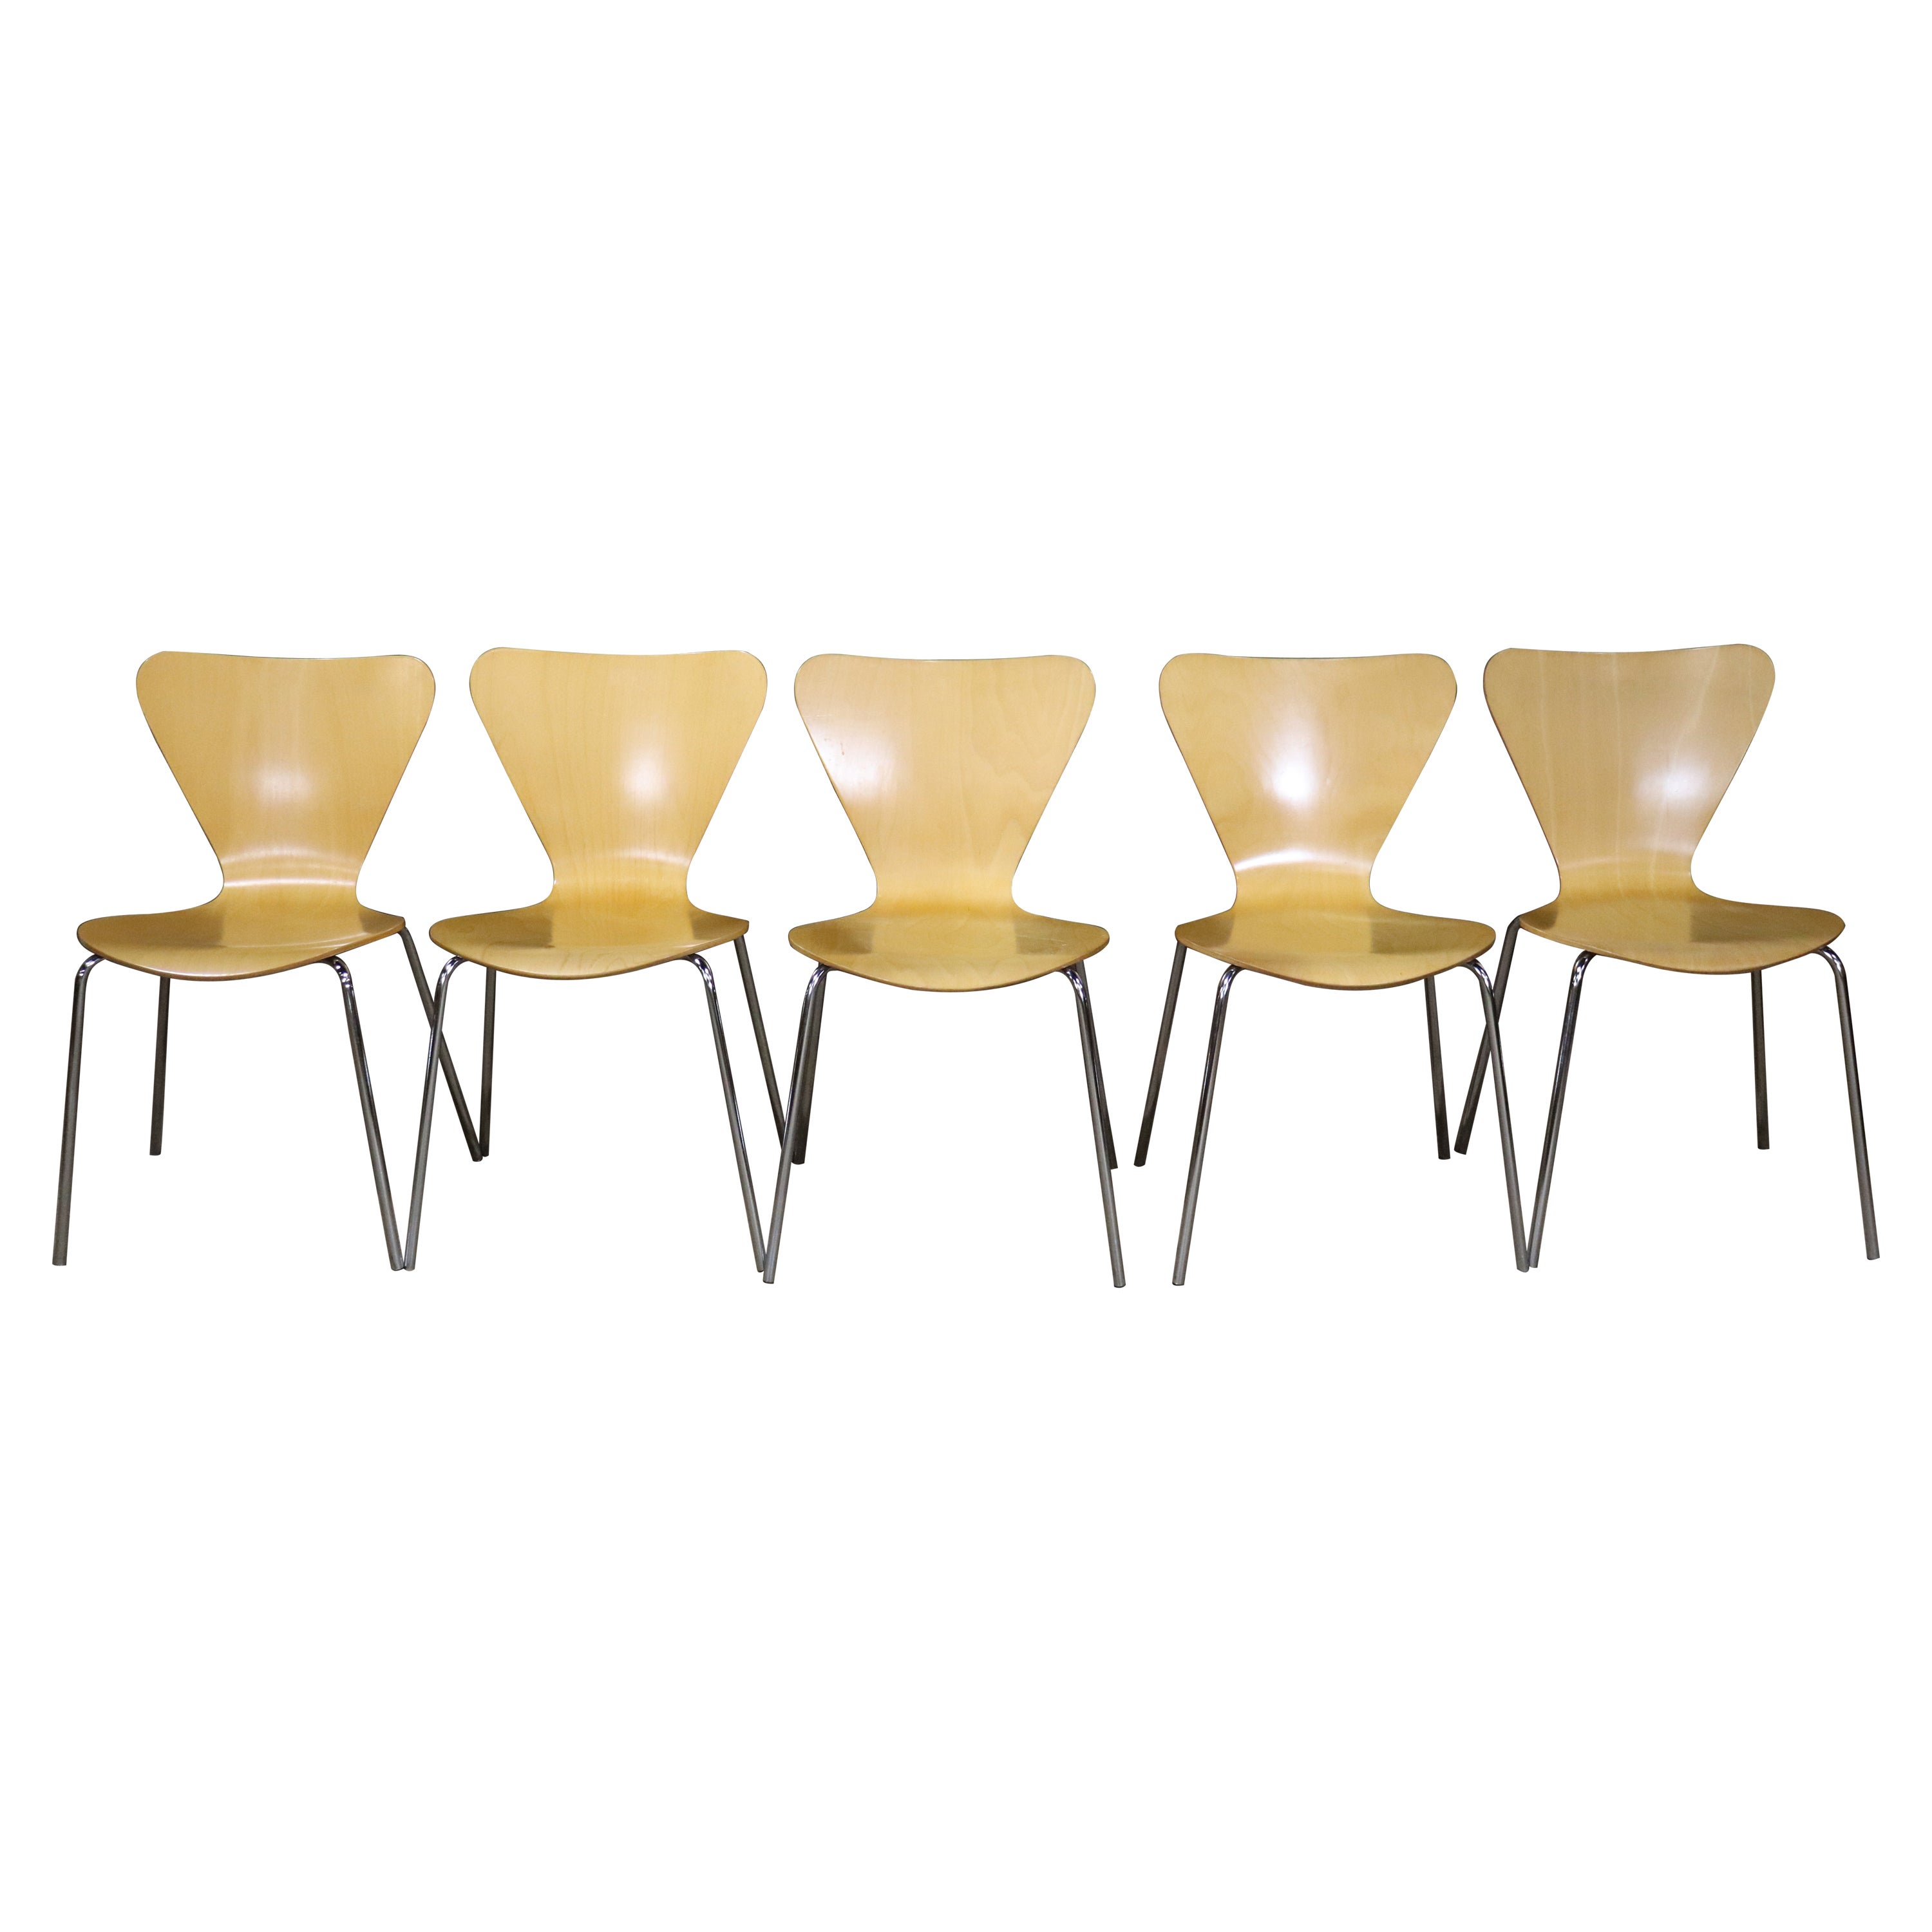 Arne Jacobsen for Fritz Hansen Dining Chairs